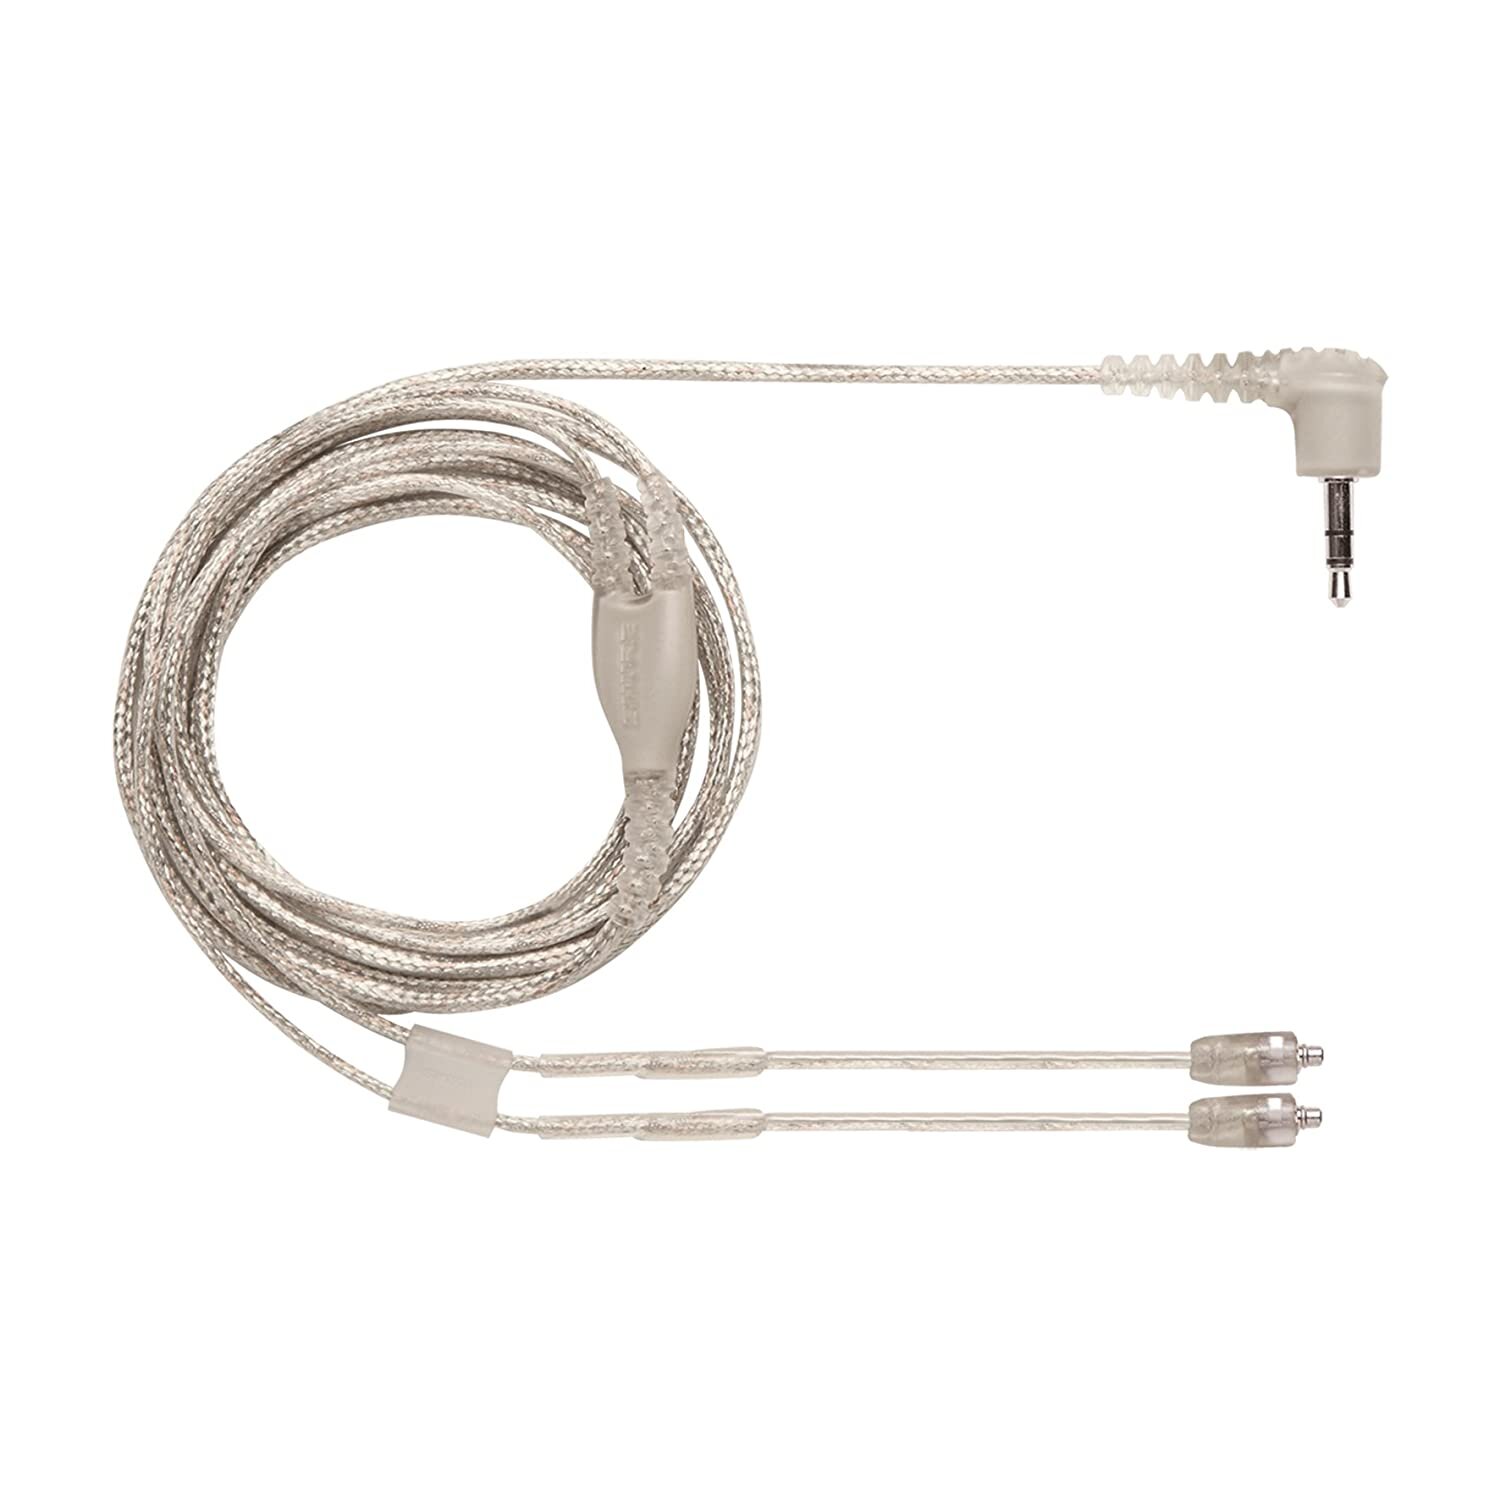 Shure Câble de rechange détachable 115 cm pour SE846, transparent/gris (EAC46CLS) : photo 1